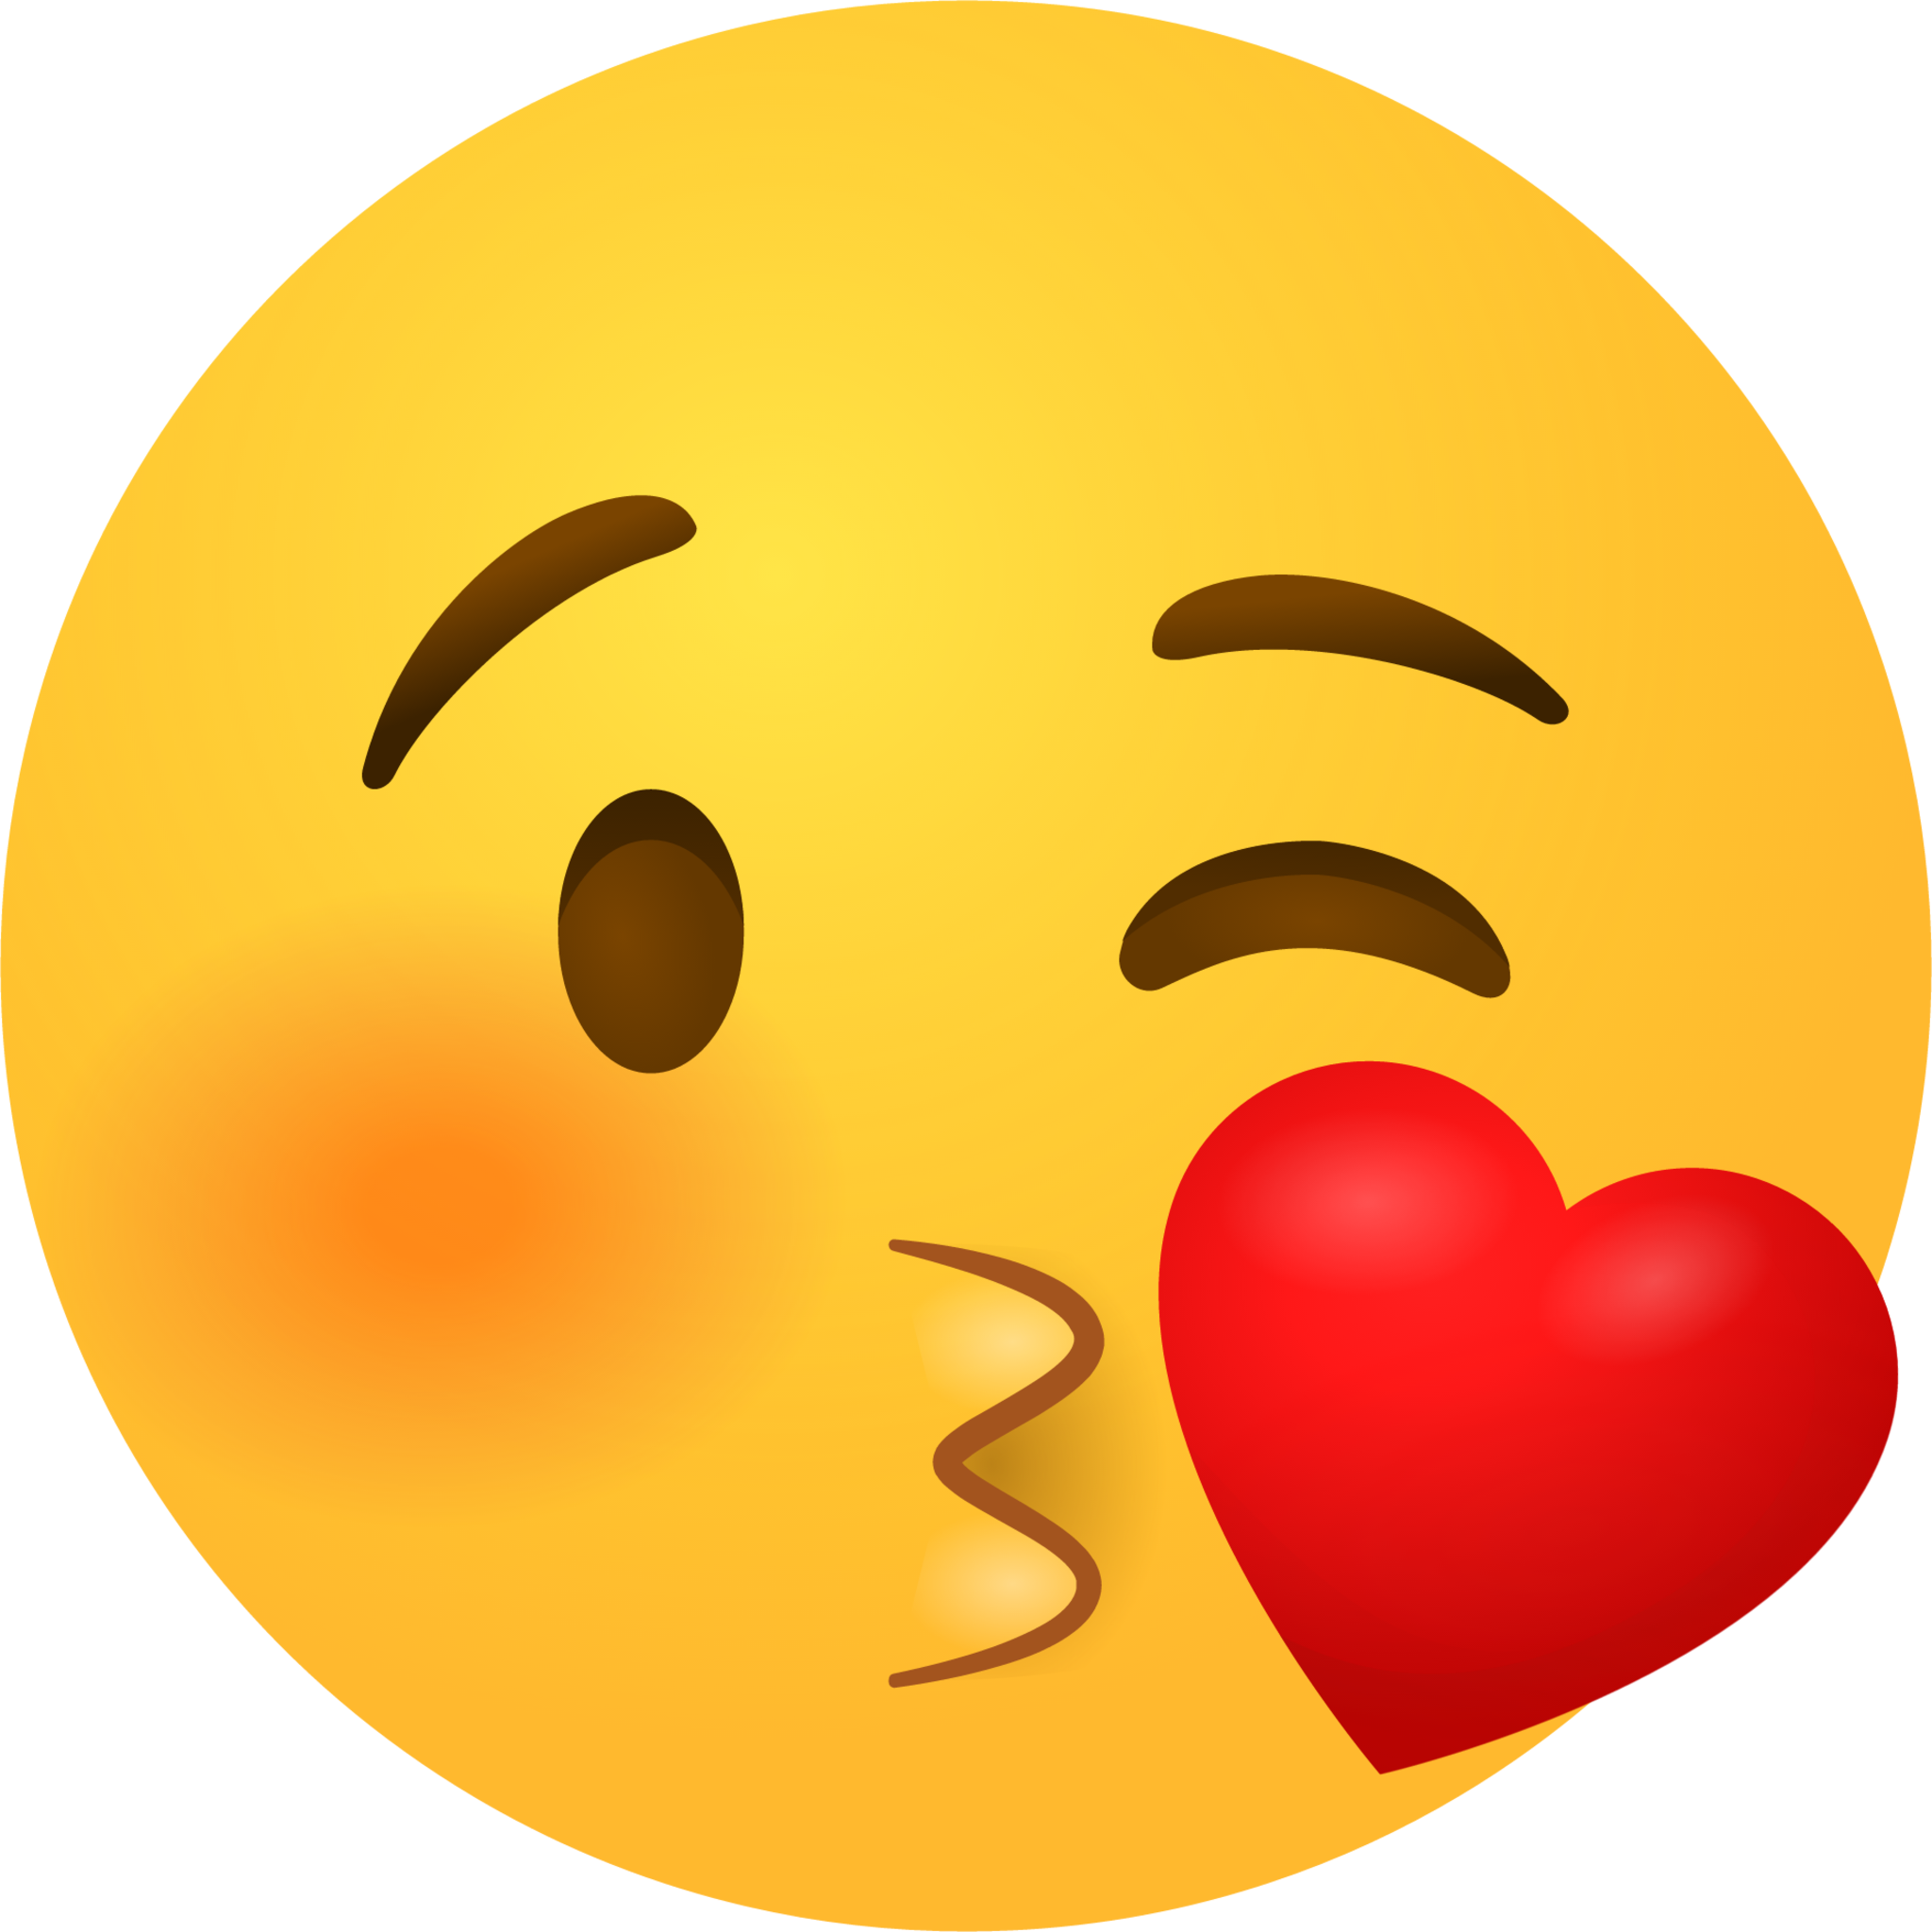 Face Blowing A Kiss Emoji Emoji 2048x2048 Re1kfsqx 